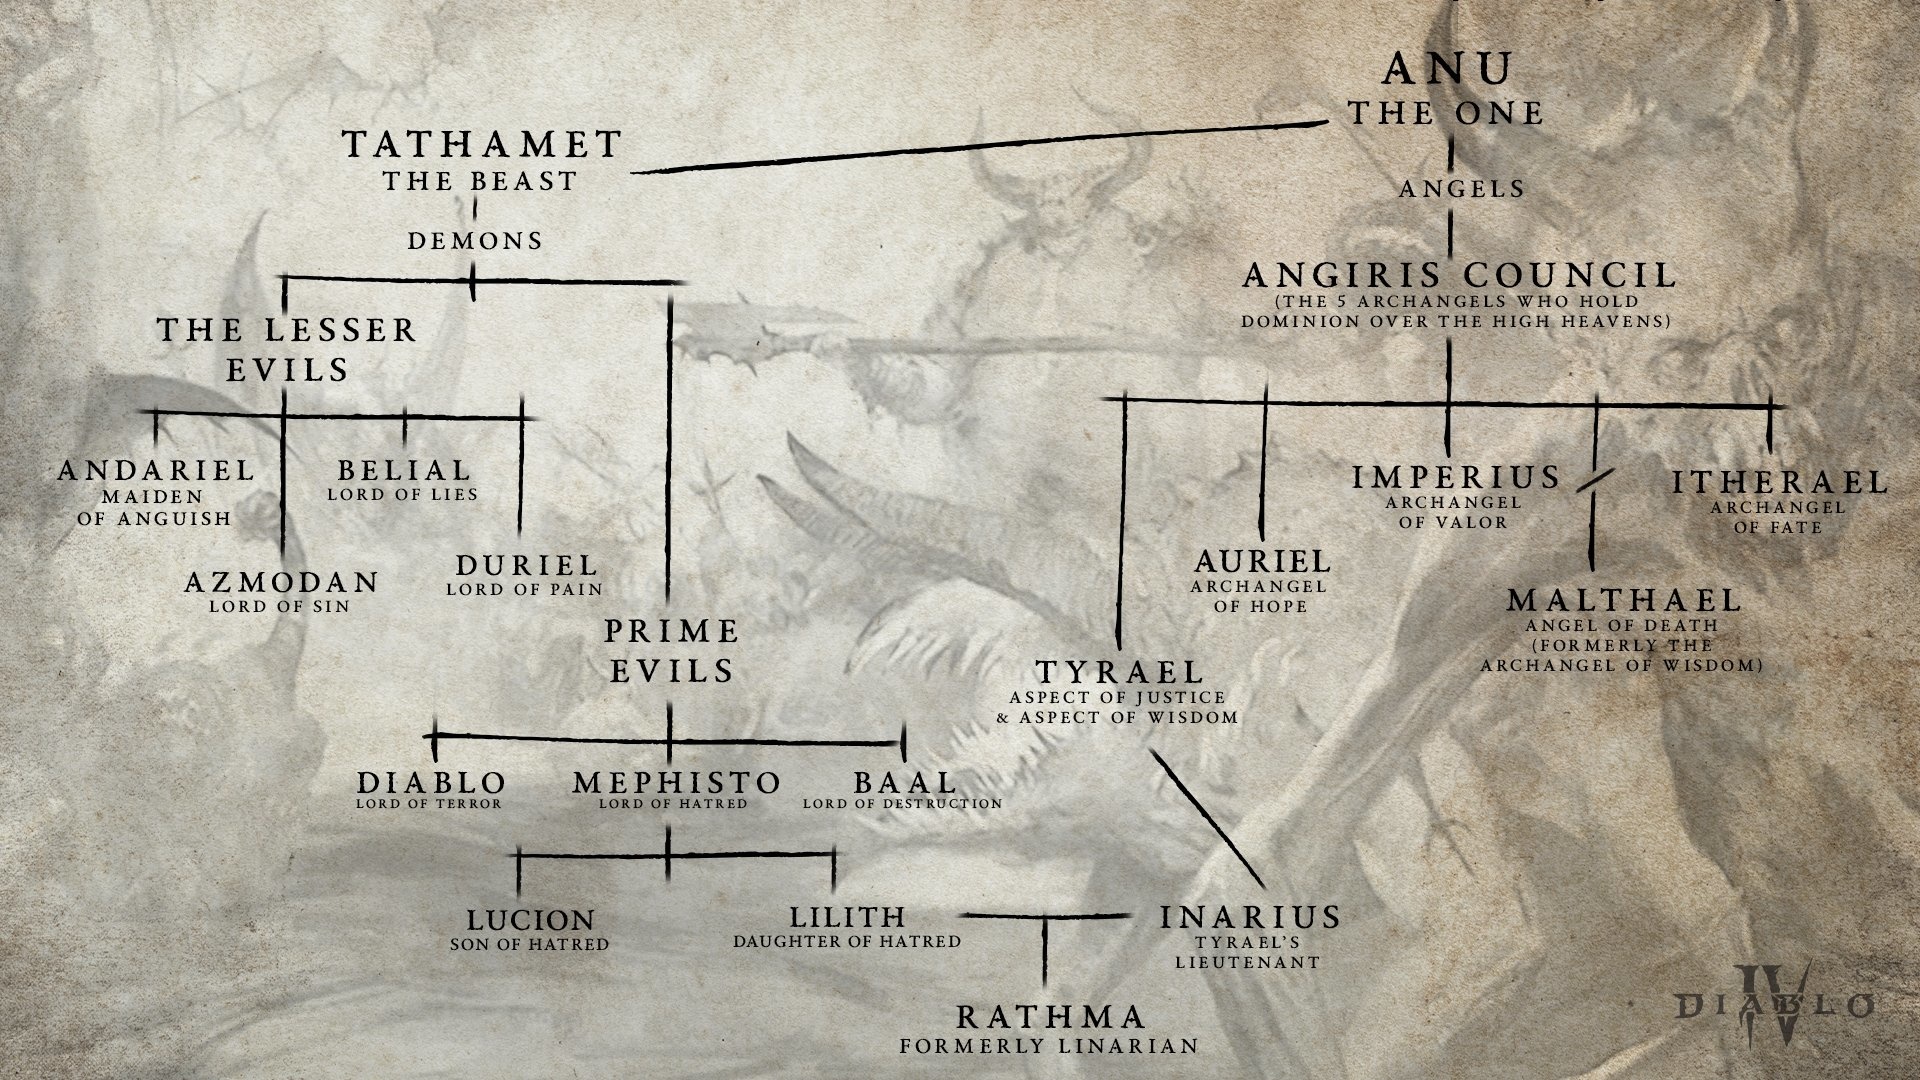 (Zaczynając od pierwszego będącego Anu, drzewo genealogiczne przedstawia anioły i demony aż do syna Lilith i Inariusa)